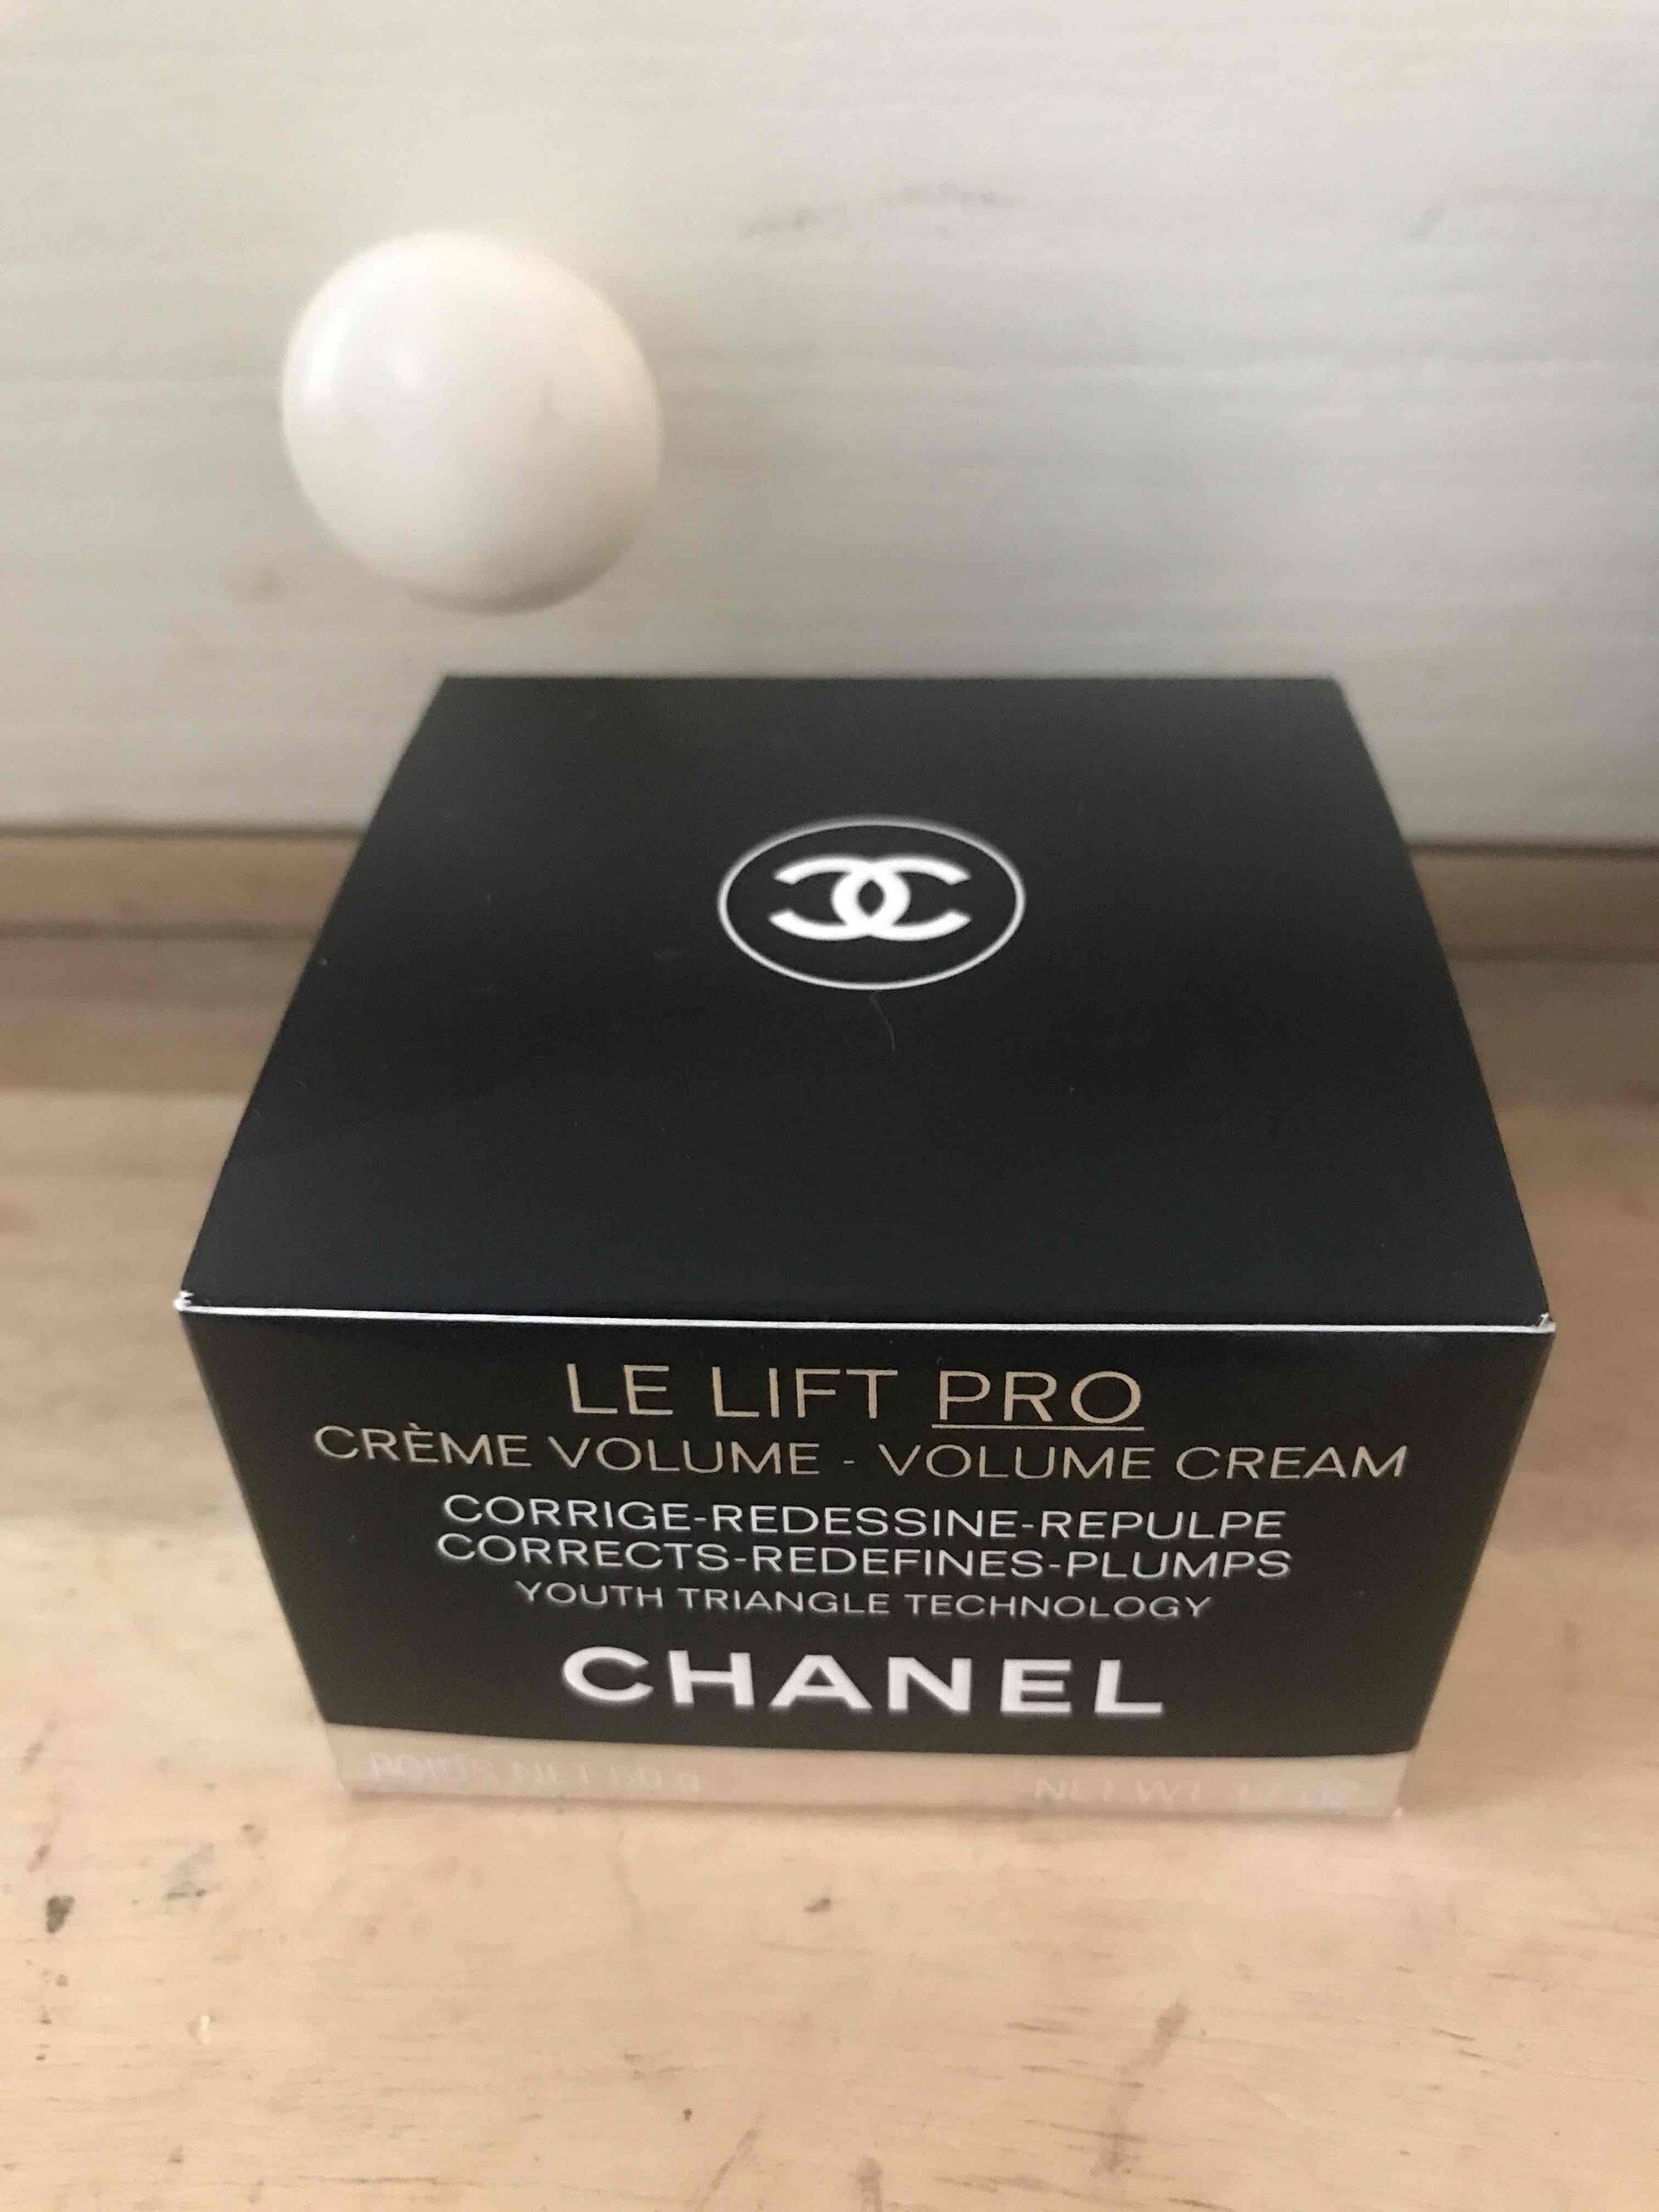 CHANEL - Le lift pro - Crème volume